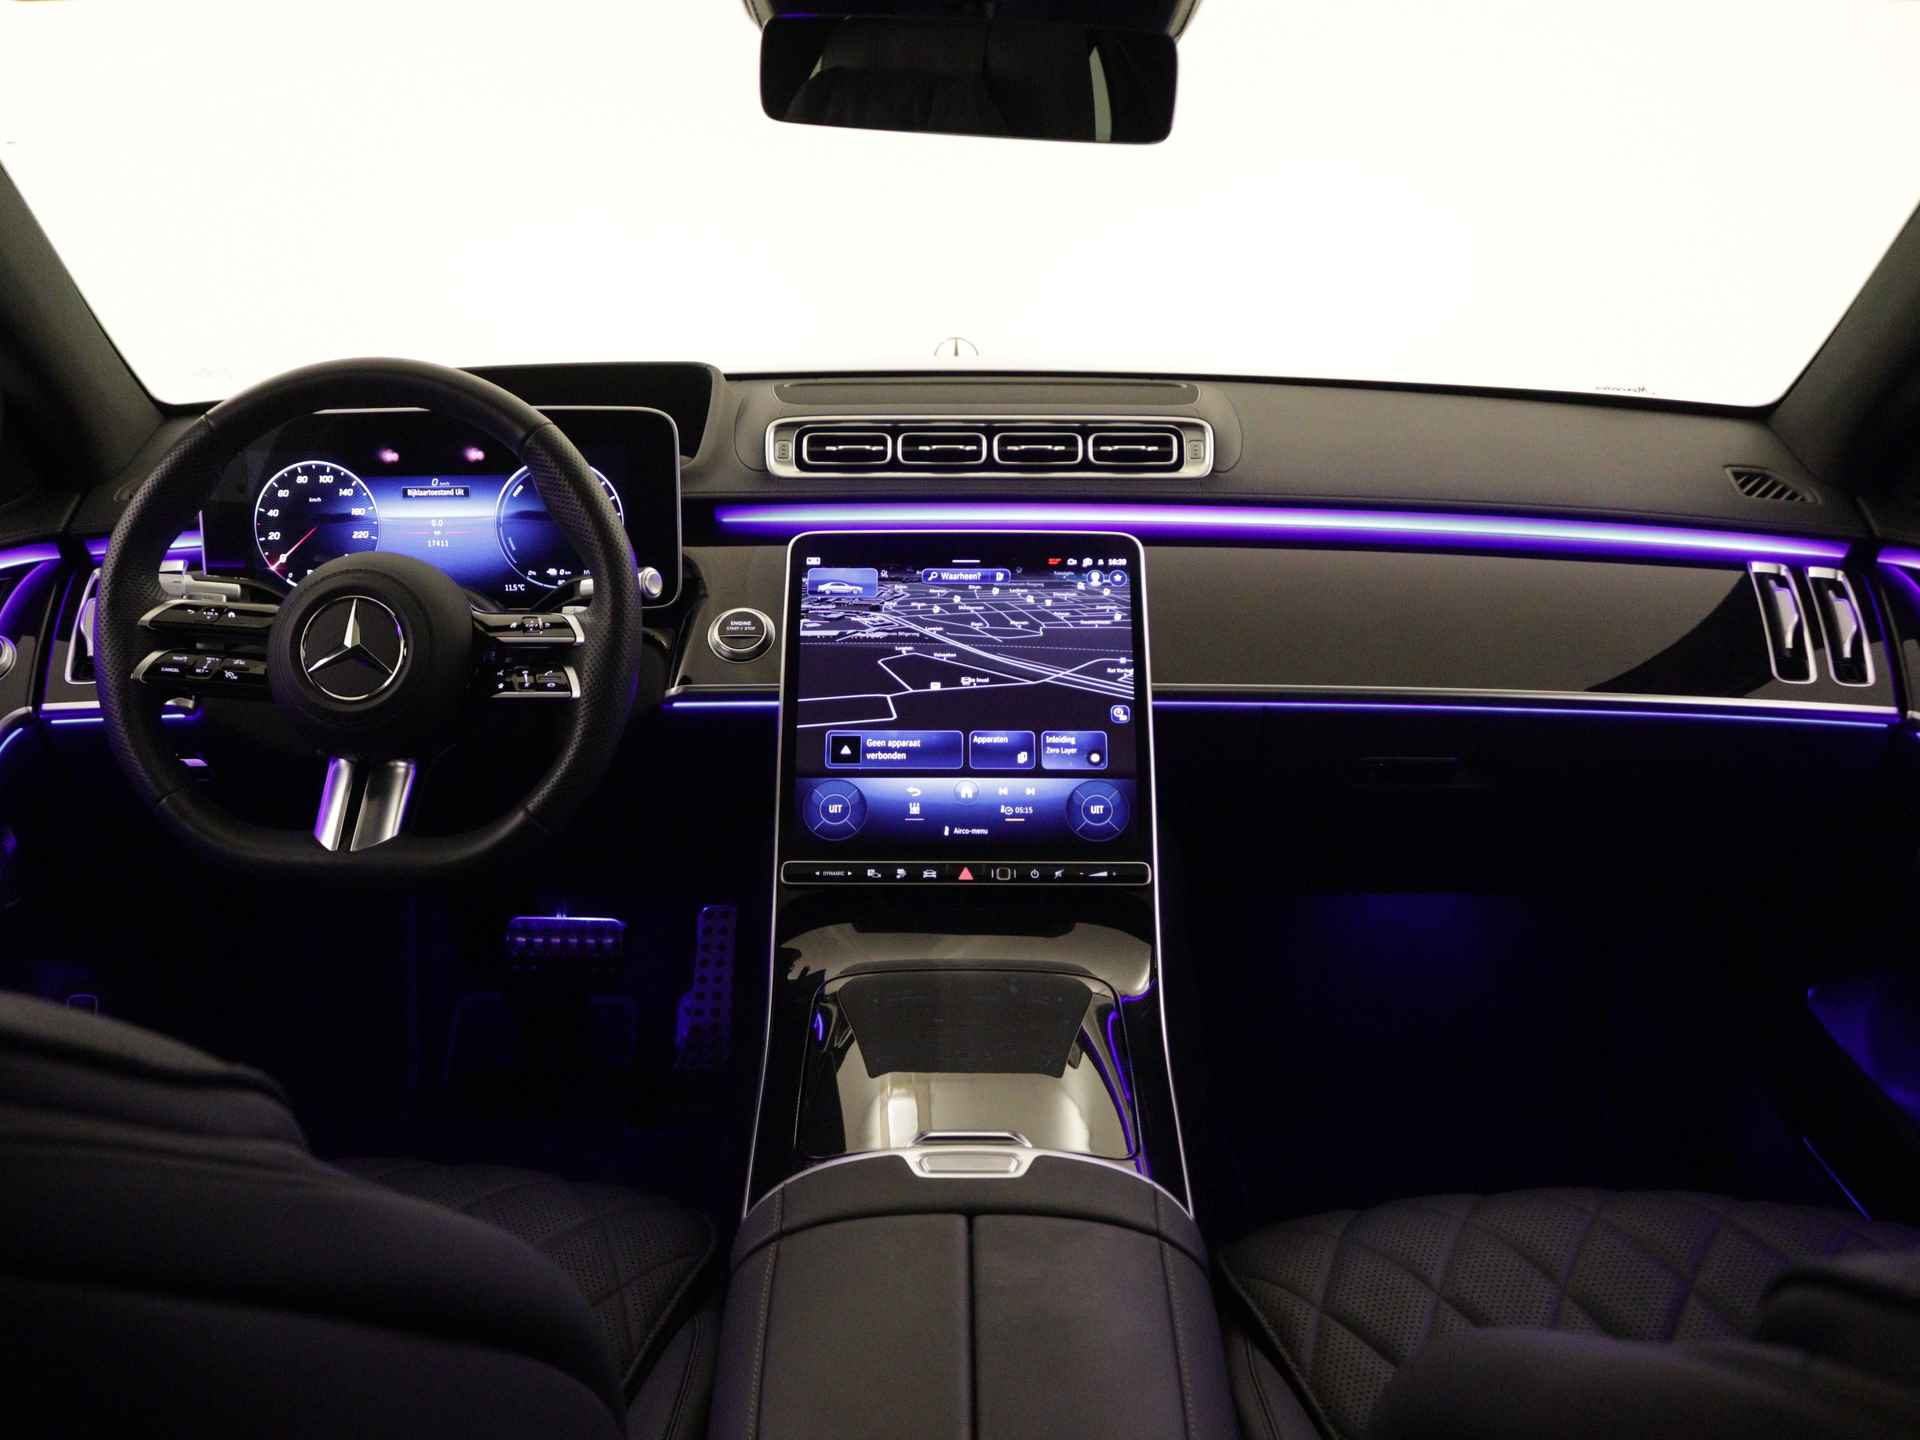 Mercedes-Benz S-Klasse 450 e Lang AMG Line Multi spaaks lichtmetalen velgen| Premium plus pakket | Night Pakket | Achteras meesturend 4,5 graad | Alarm klasse 5 | inclusief 24 maanden MB Certified garantie voor europa - 5/37